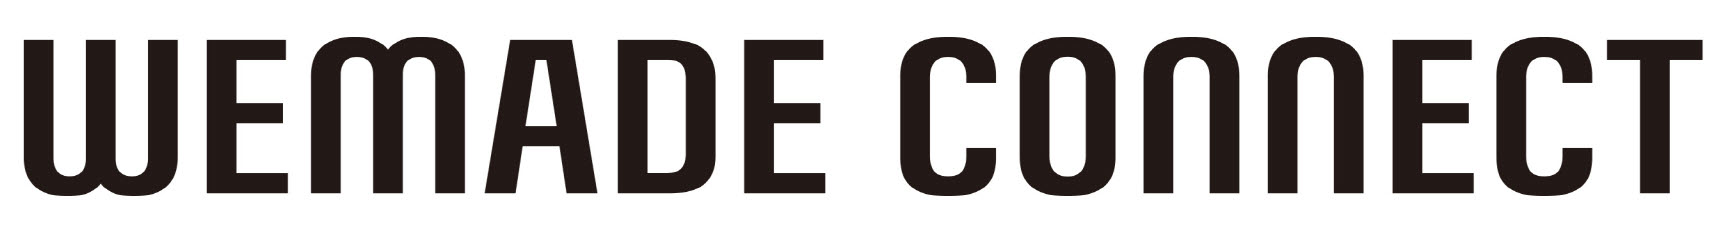 위메이드의 계열사 (주)위메이드커넥트의 로고